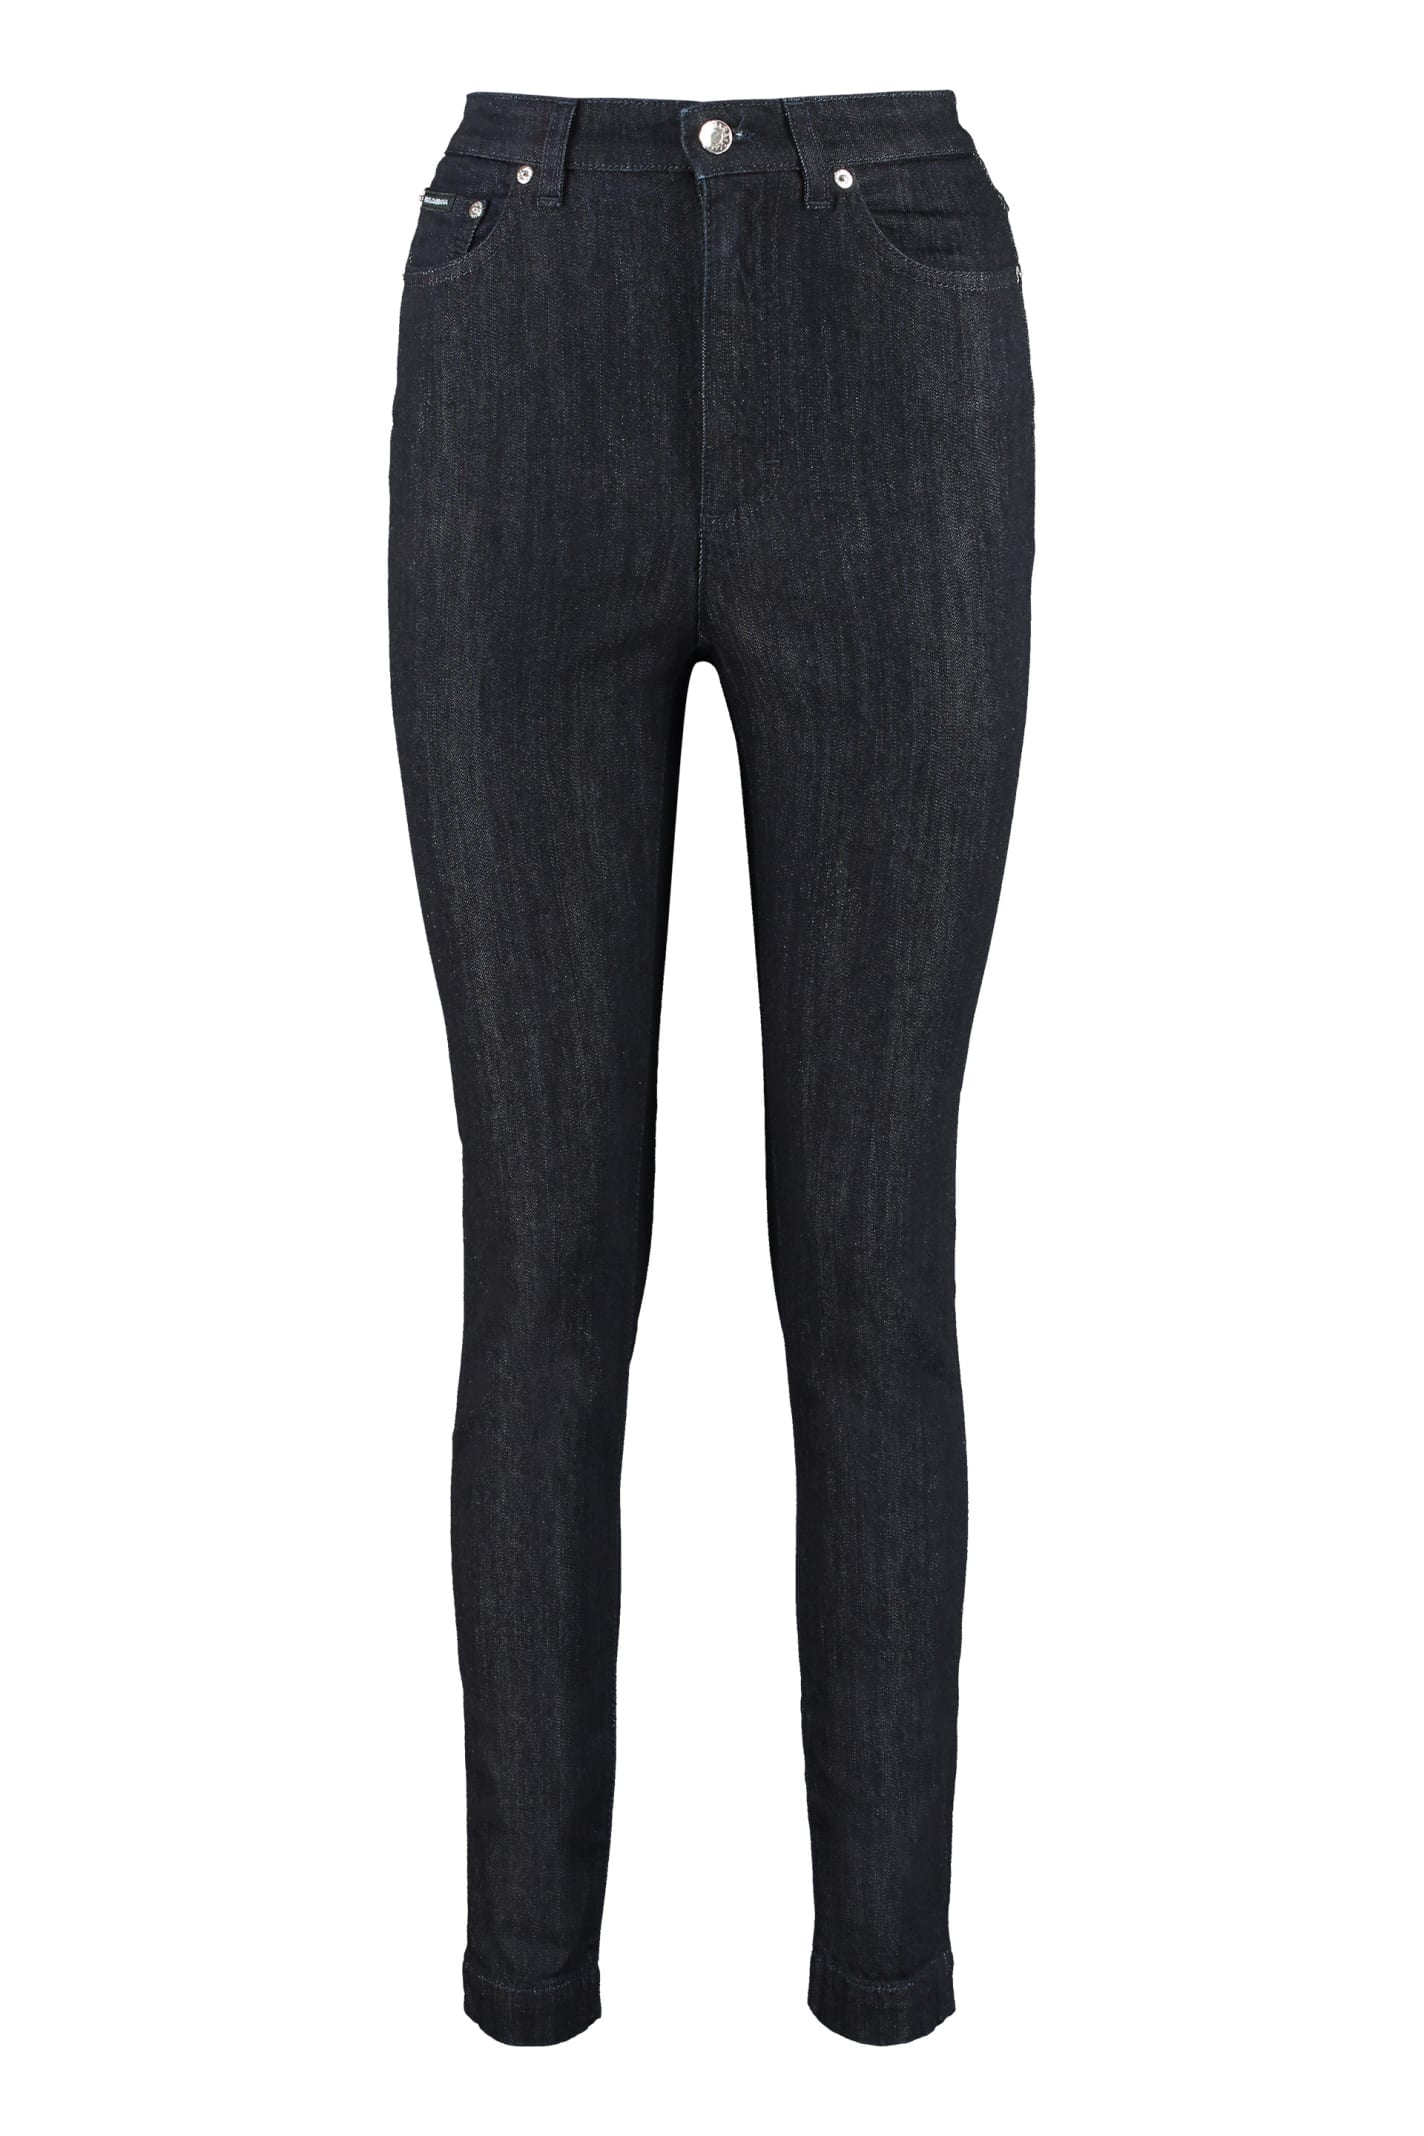 Dolce & Gabbana Grace 5-pocket Jeans